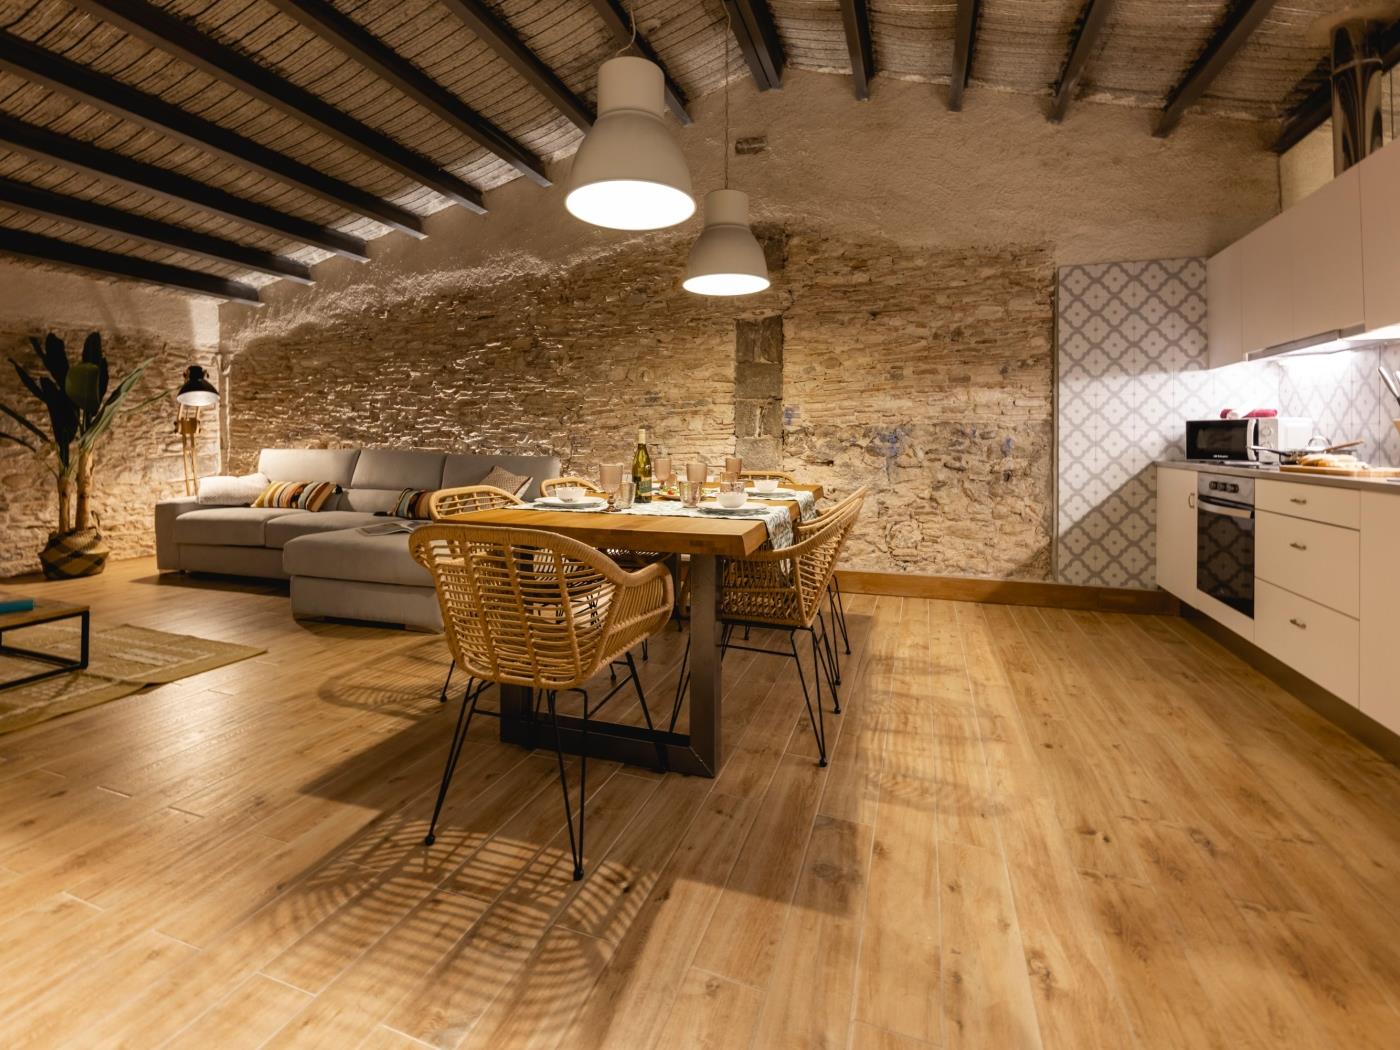 Bravissimo Plaça del Vi, Design Penthouse in Girona